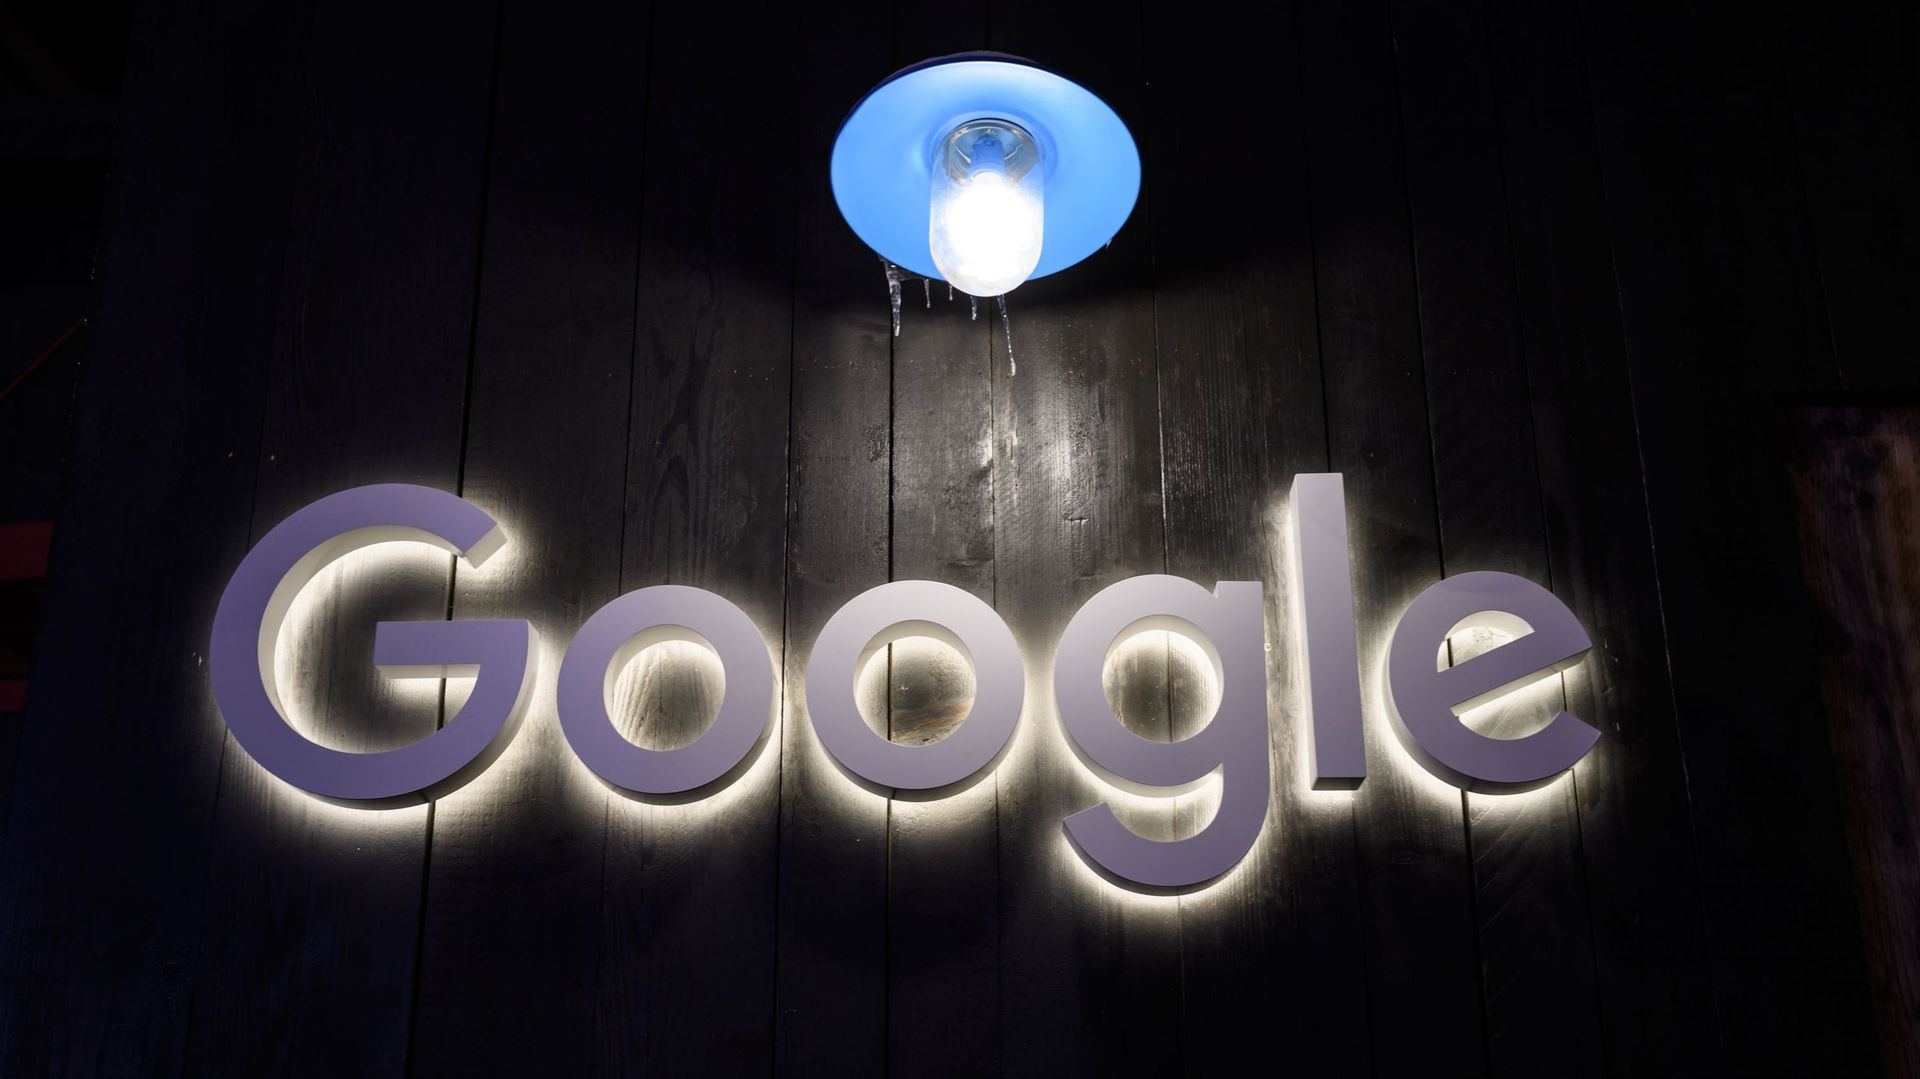 Un porte-parole de Google a réagi par communiqué, soulignant que l'entreprise respecte la vie privée.